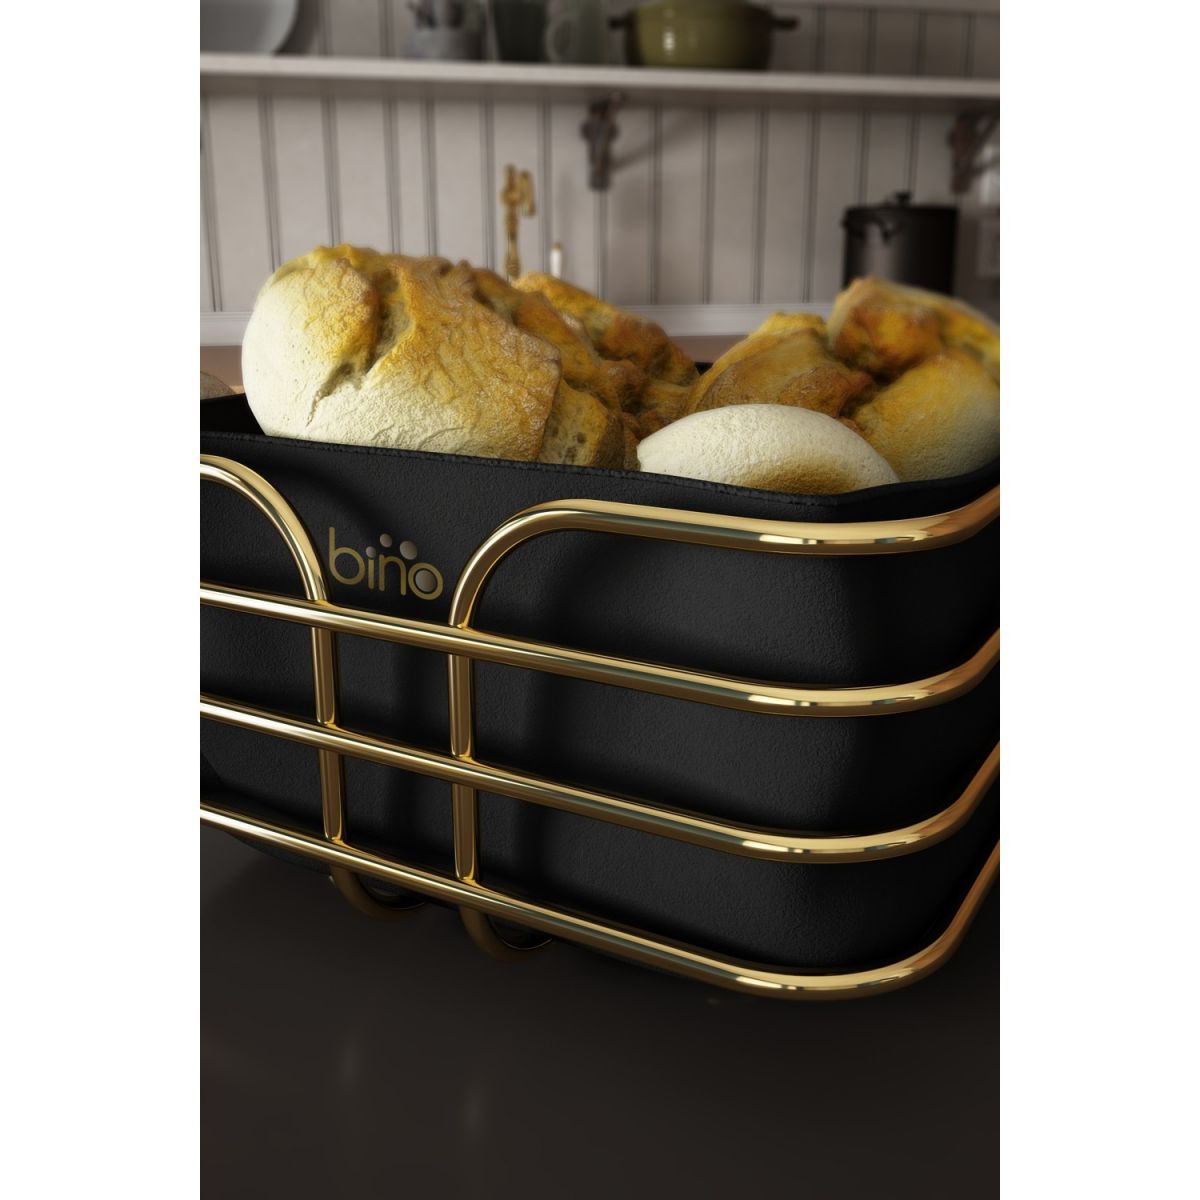 Bino Ekmeklik Ekmek Sepeti Çok Amaçlı Metal Kutu Lüx Gold Paslanmaz Sepet Siyah Kumaş